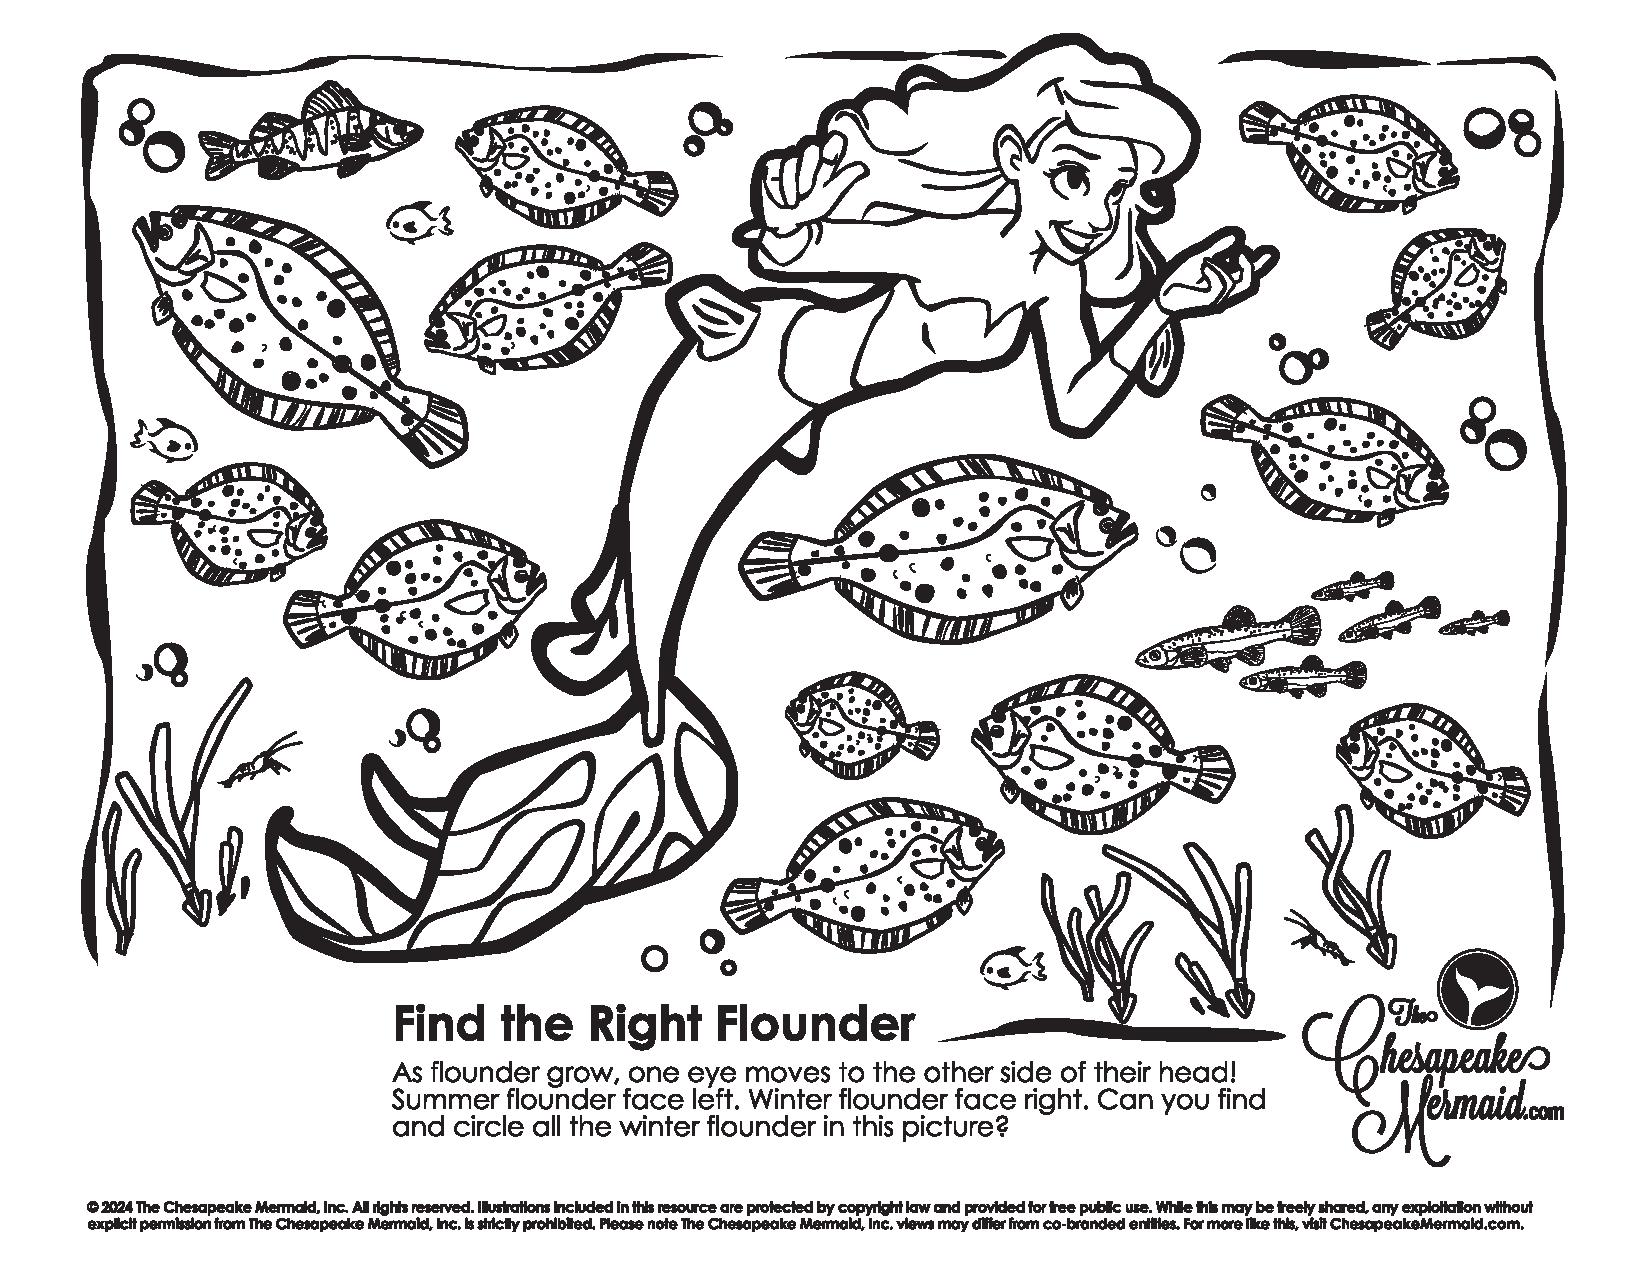 Find the Flounder!